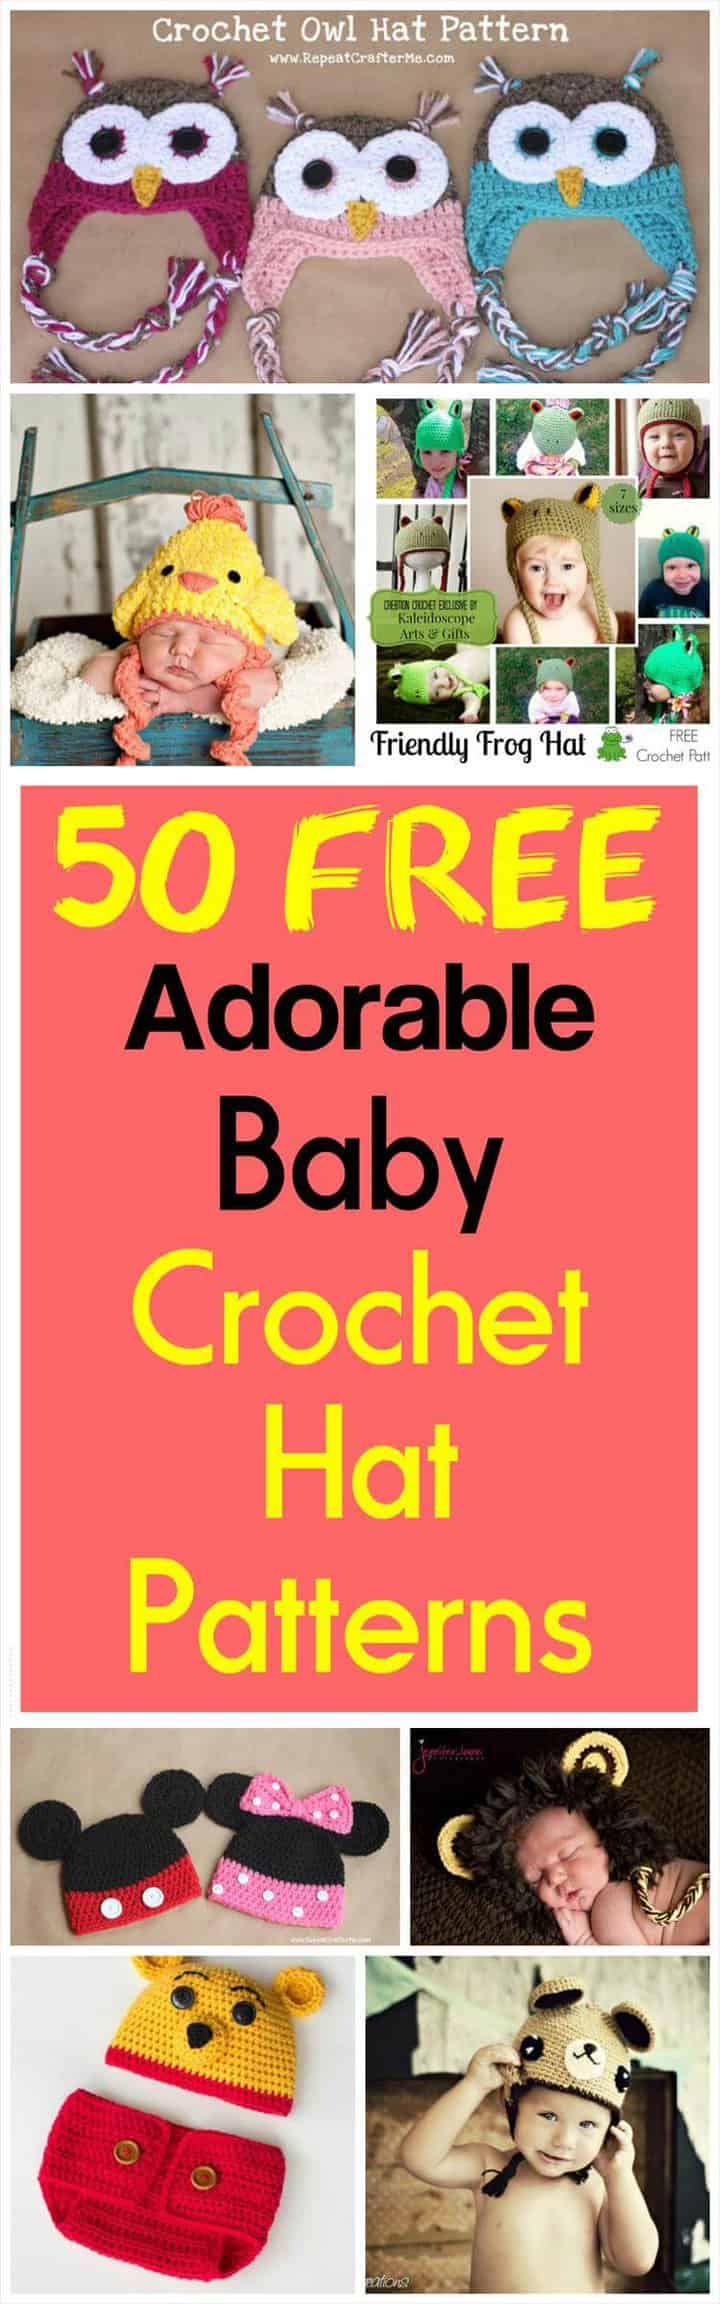 50 patrones de gorro de crochet para bebé adorables gratis